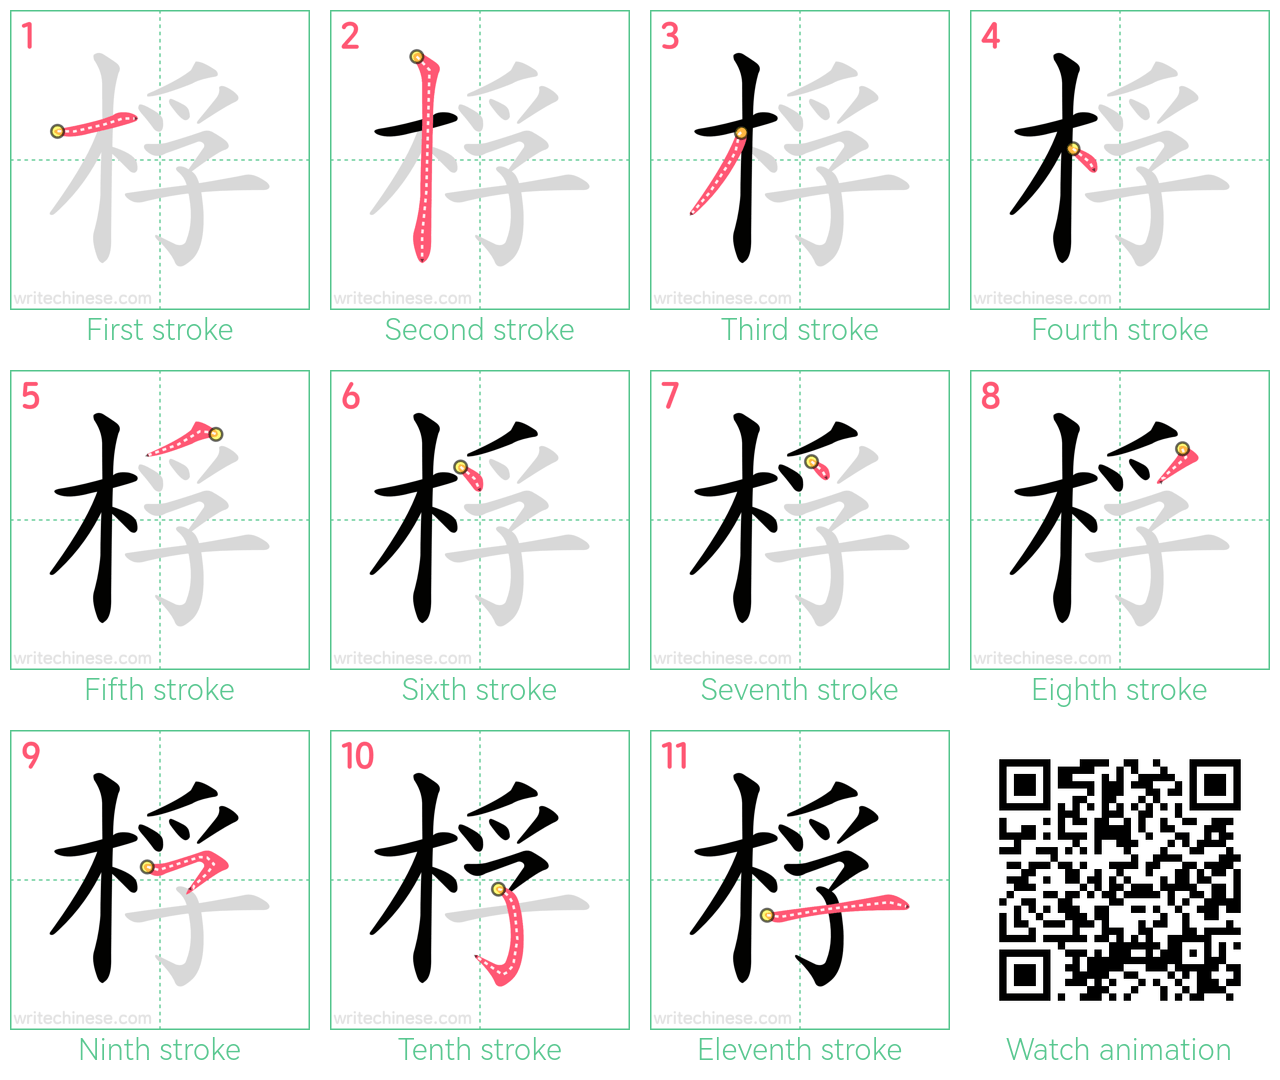 桴 step-by-step stroke order diagrams